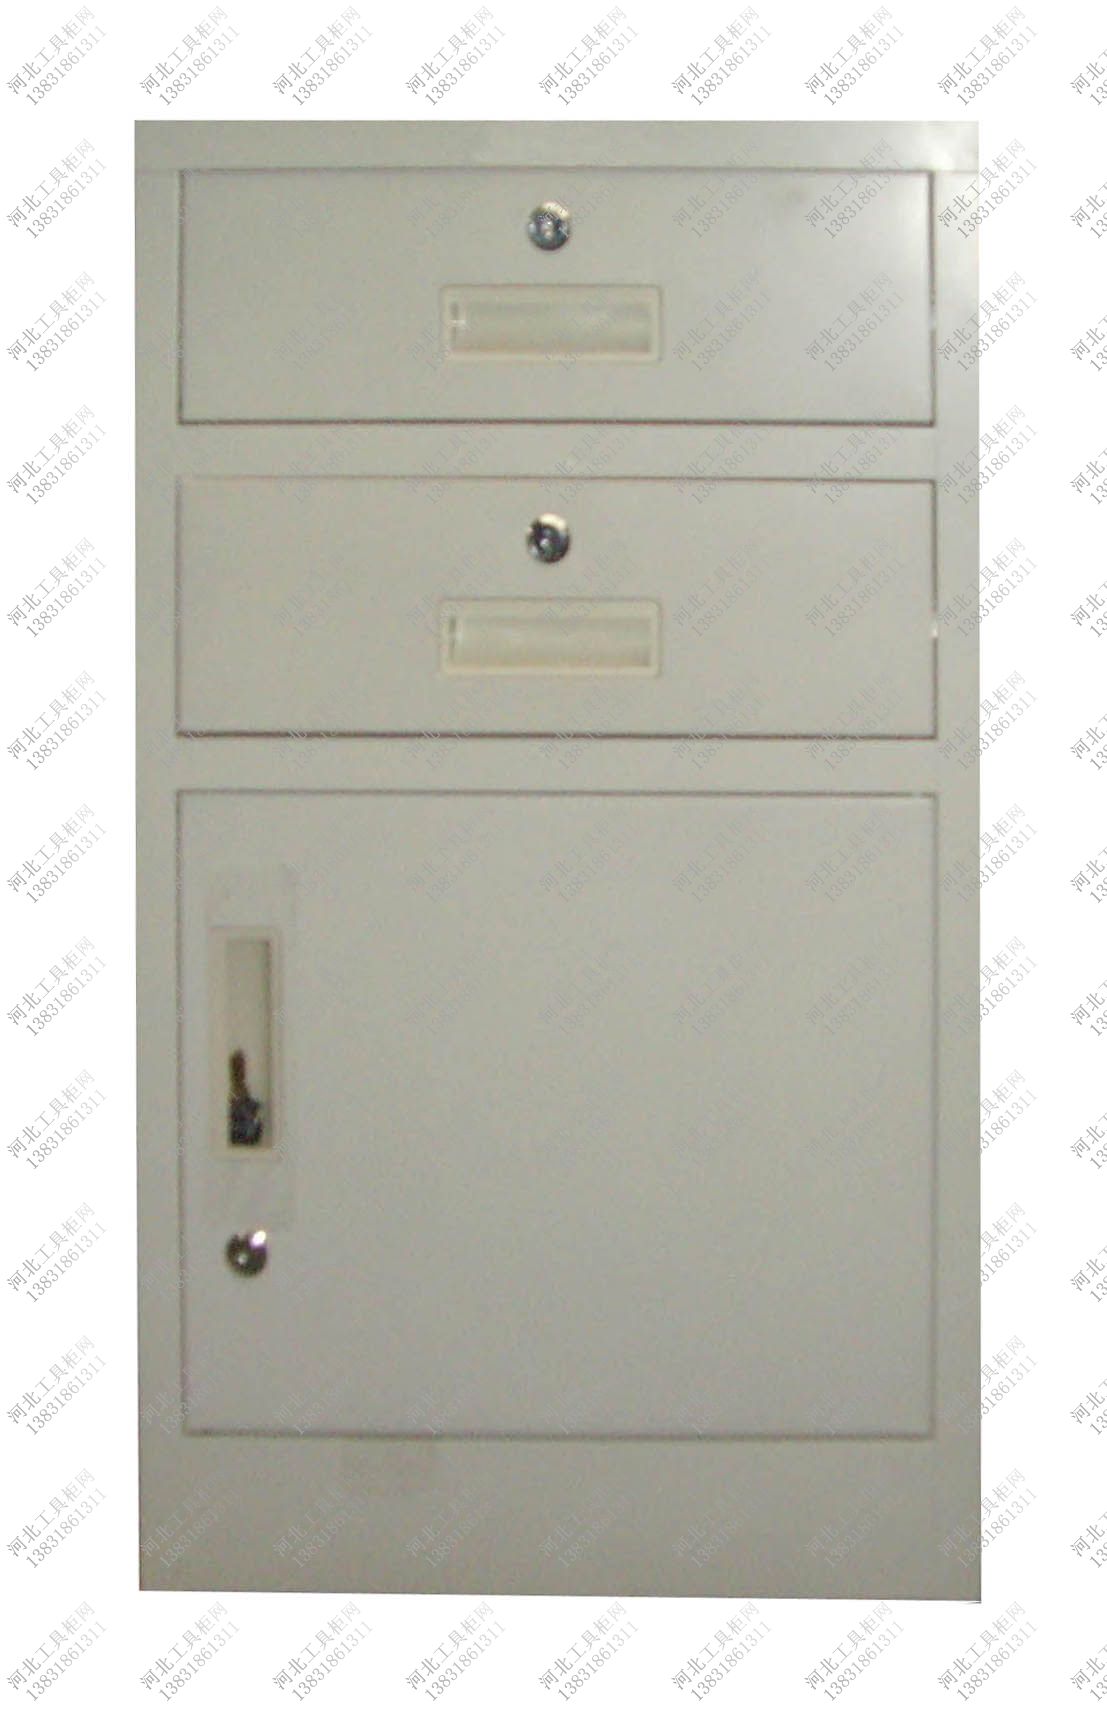 二屉单门工具柜价格,两个抽屉一个门的钢制工具柜价格,定做抽屉+单门的柜子价格